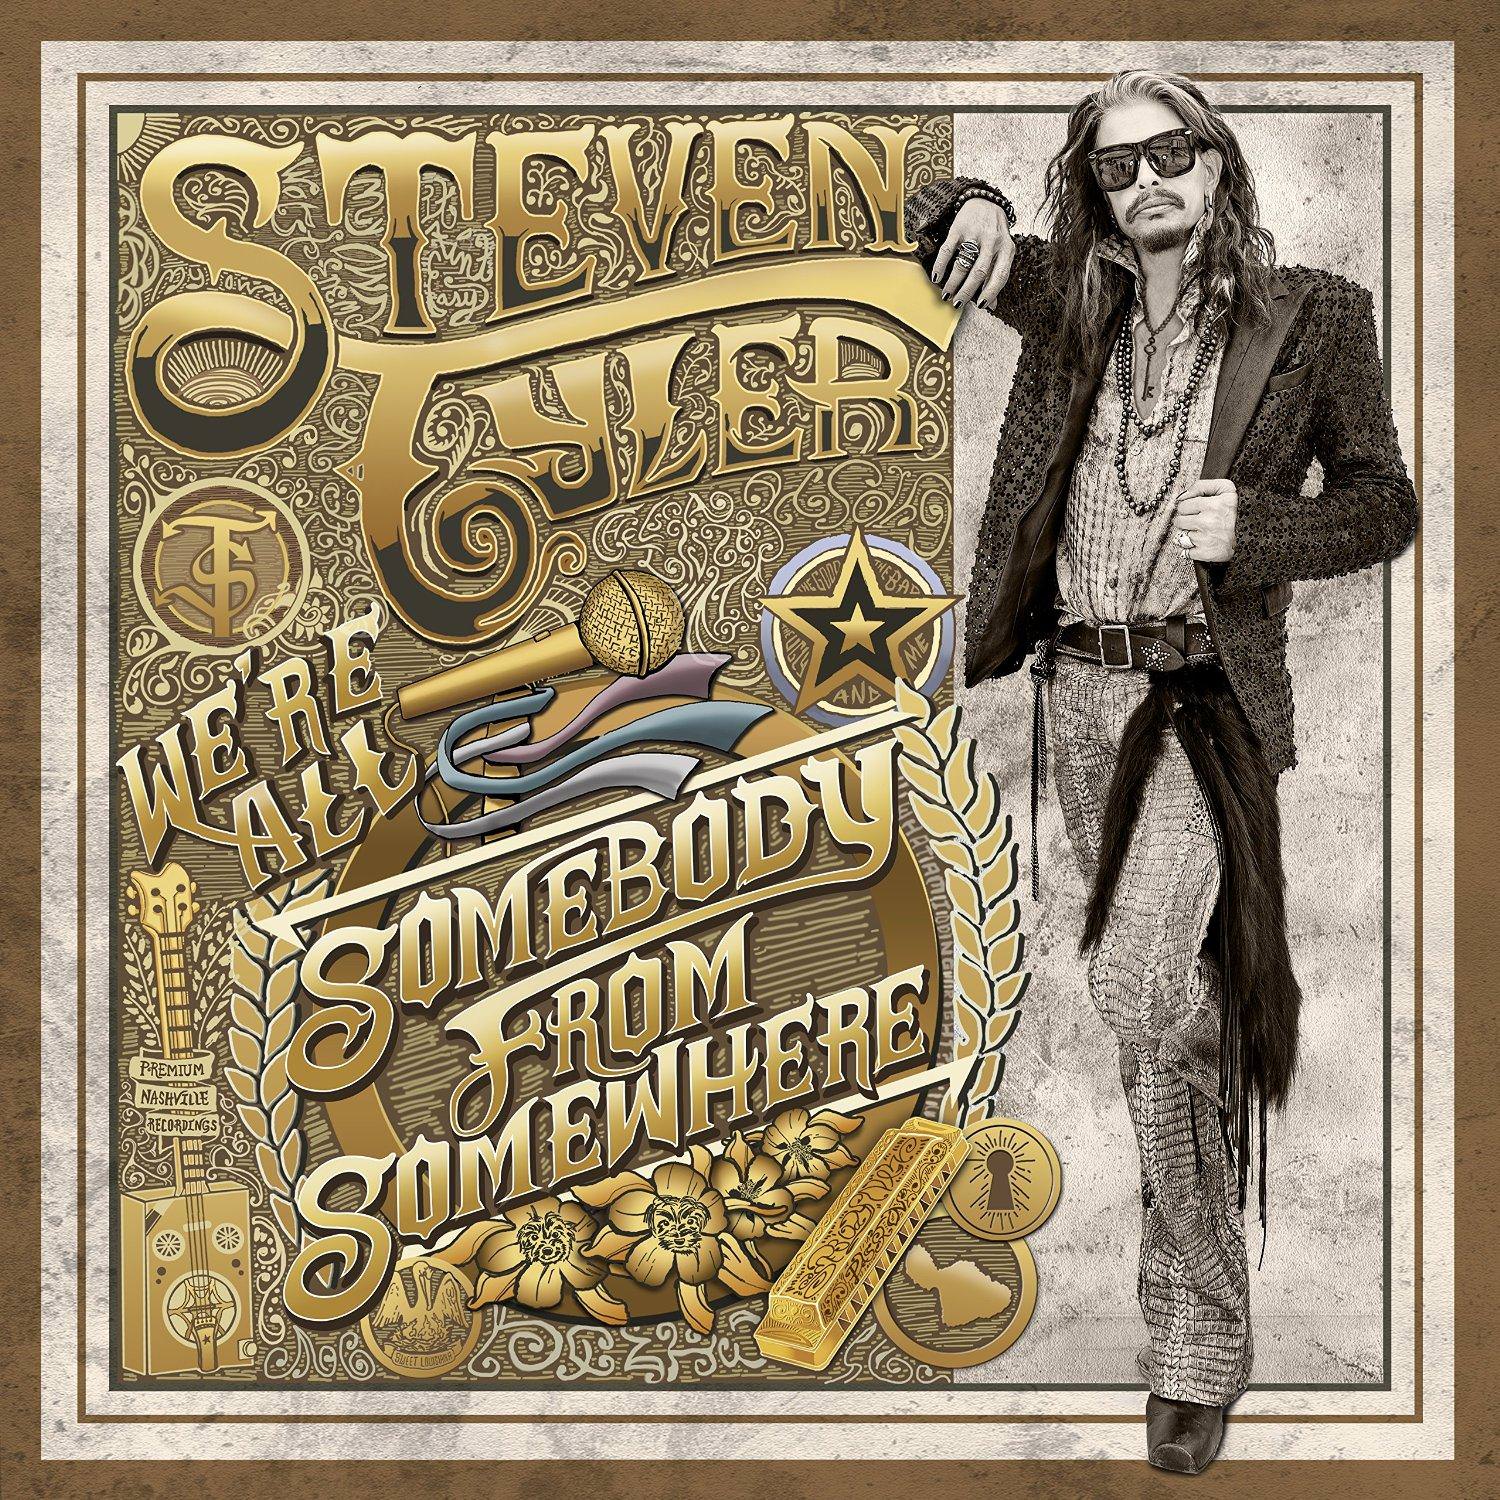 Steven Tyler - We’re All Somebody From Somewhere (2016) [HDTracks FLAC 24bit/96kHz]